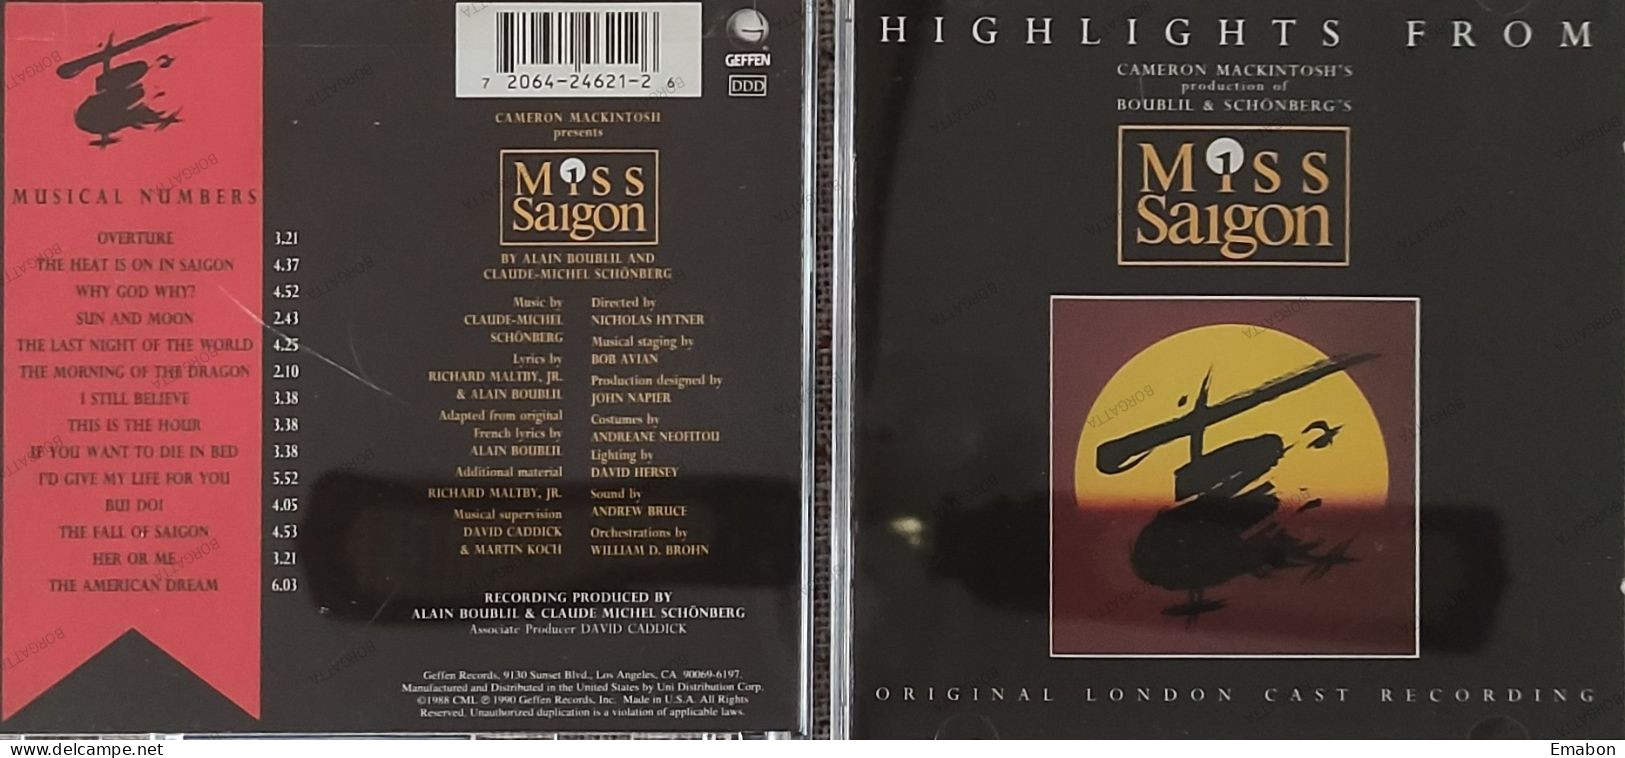 BORGATTA - FILM MUSIC - Cd ALAIN BOUBLIL - HIGHLIGHTS FROM MISS SAIGON   - GEFFEN RECORDS 1990 - USATO In Buono Stato - Musica Di Film